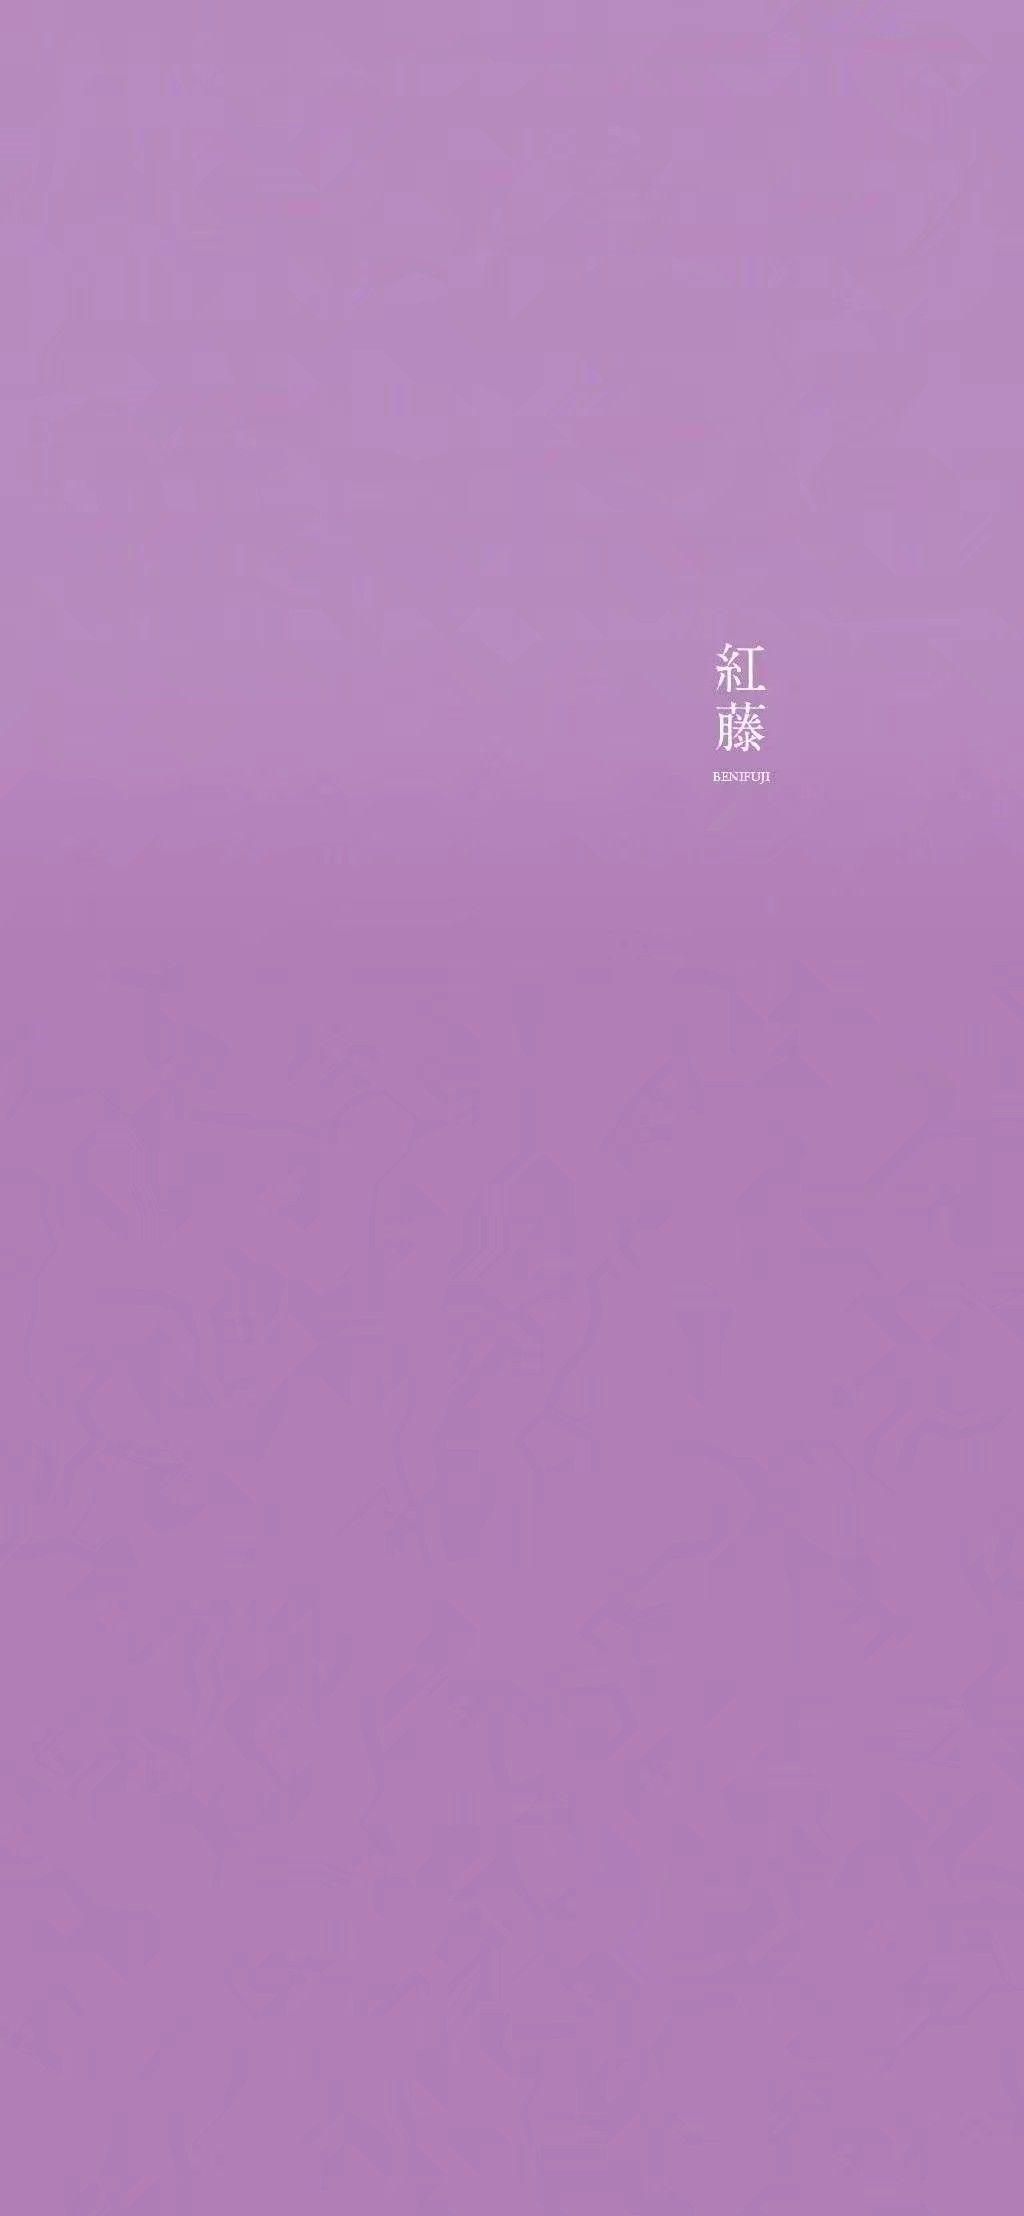 紫色纯色壁纸 - 高清图片，堆糖，美图壁纸兴趣社区